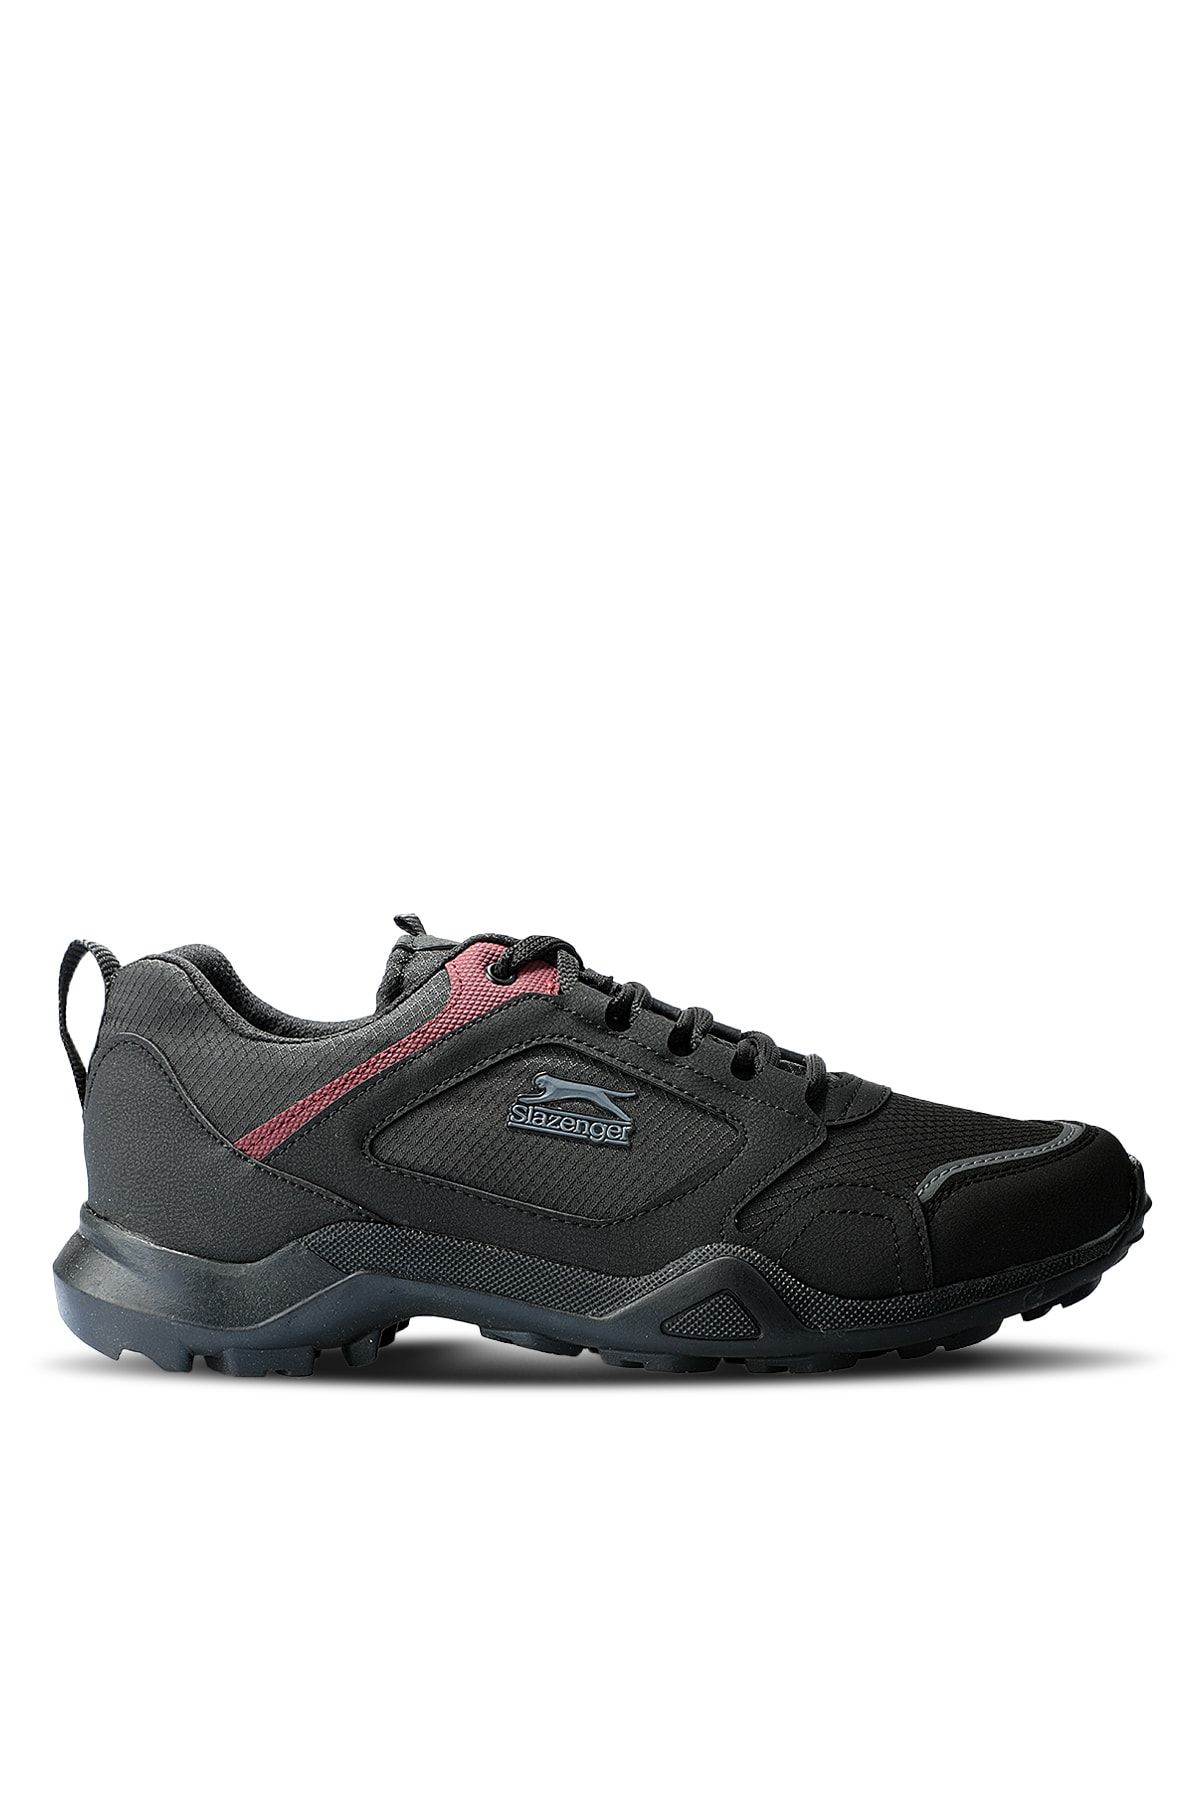 Slazenger Atlanta Sneaker Erkek Ayakkabı Siyah / Sarı